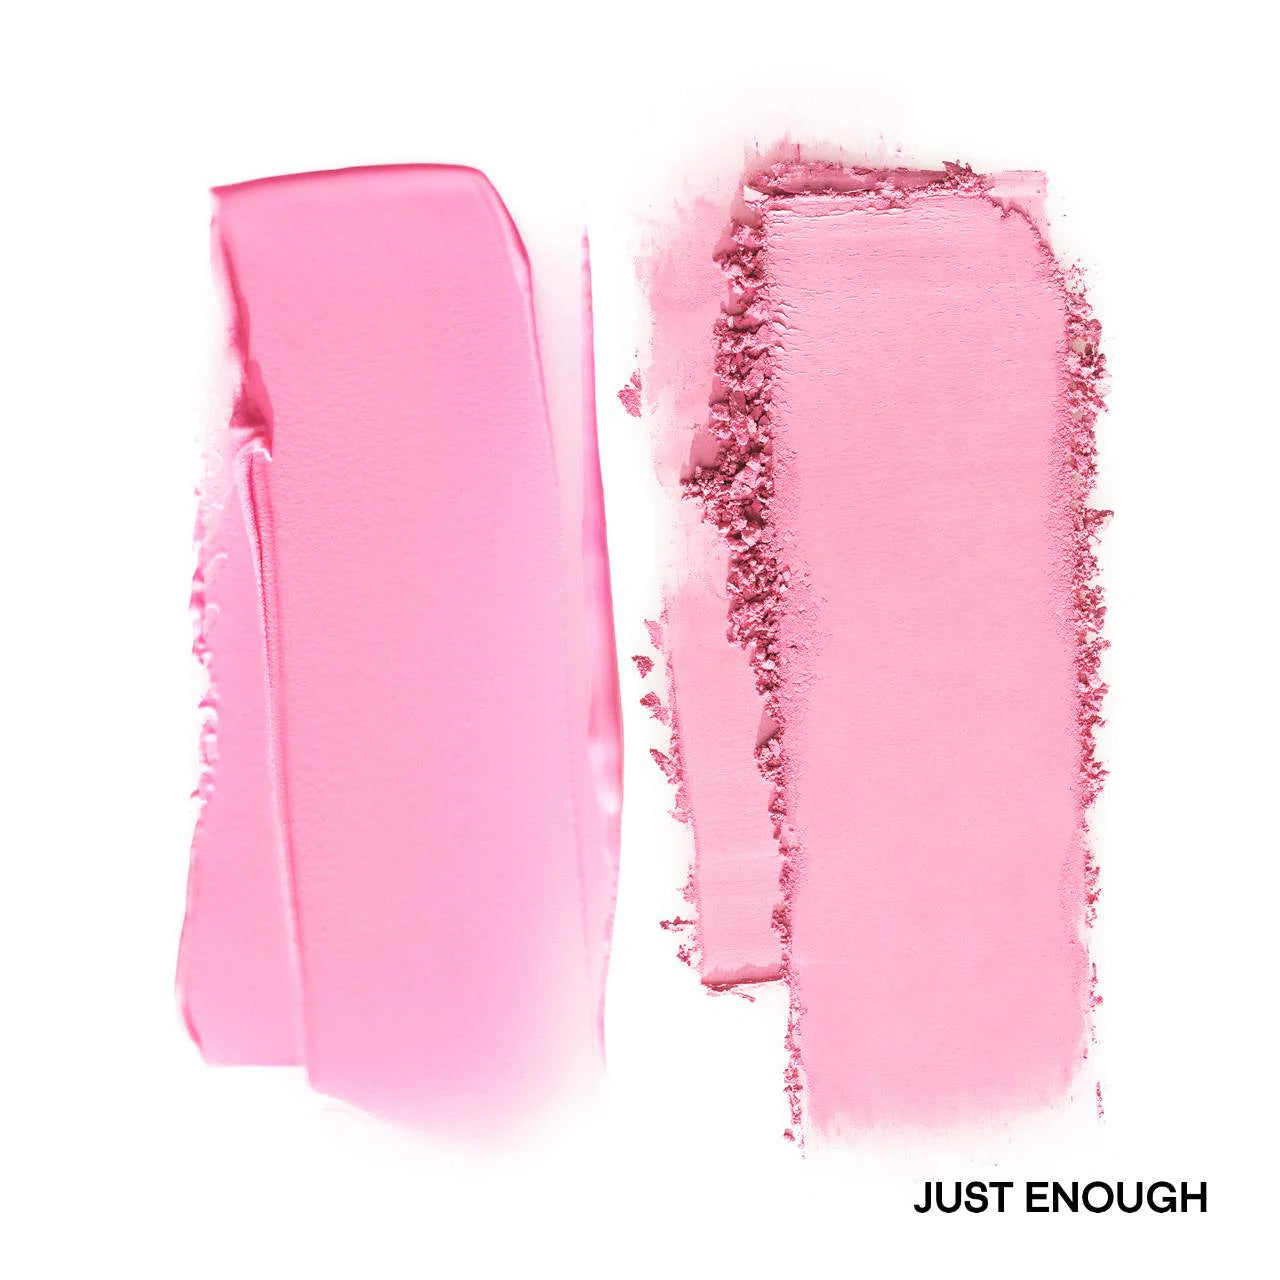 Sephora Sale: PATRICK TA | Major Headlines Double-Take Crème & Powder Blush Duo | Just Enough